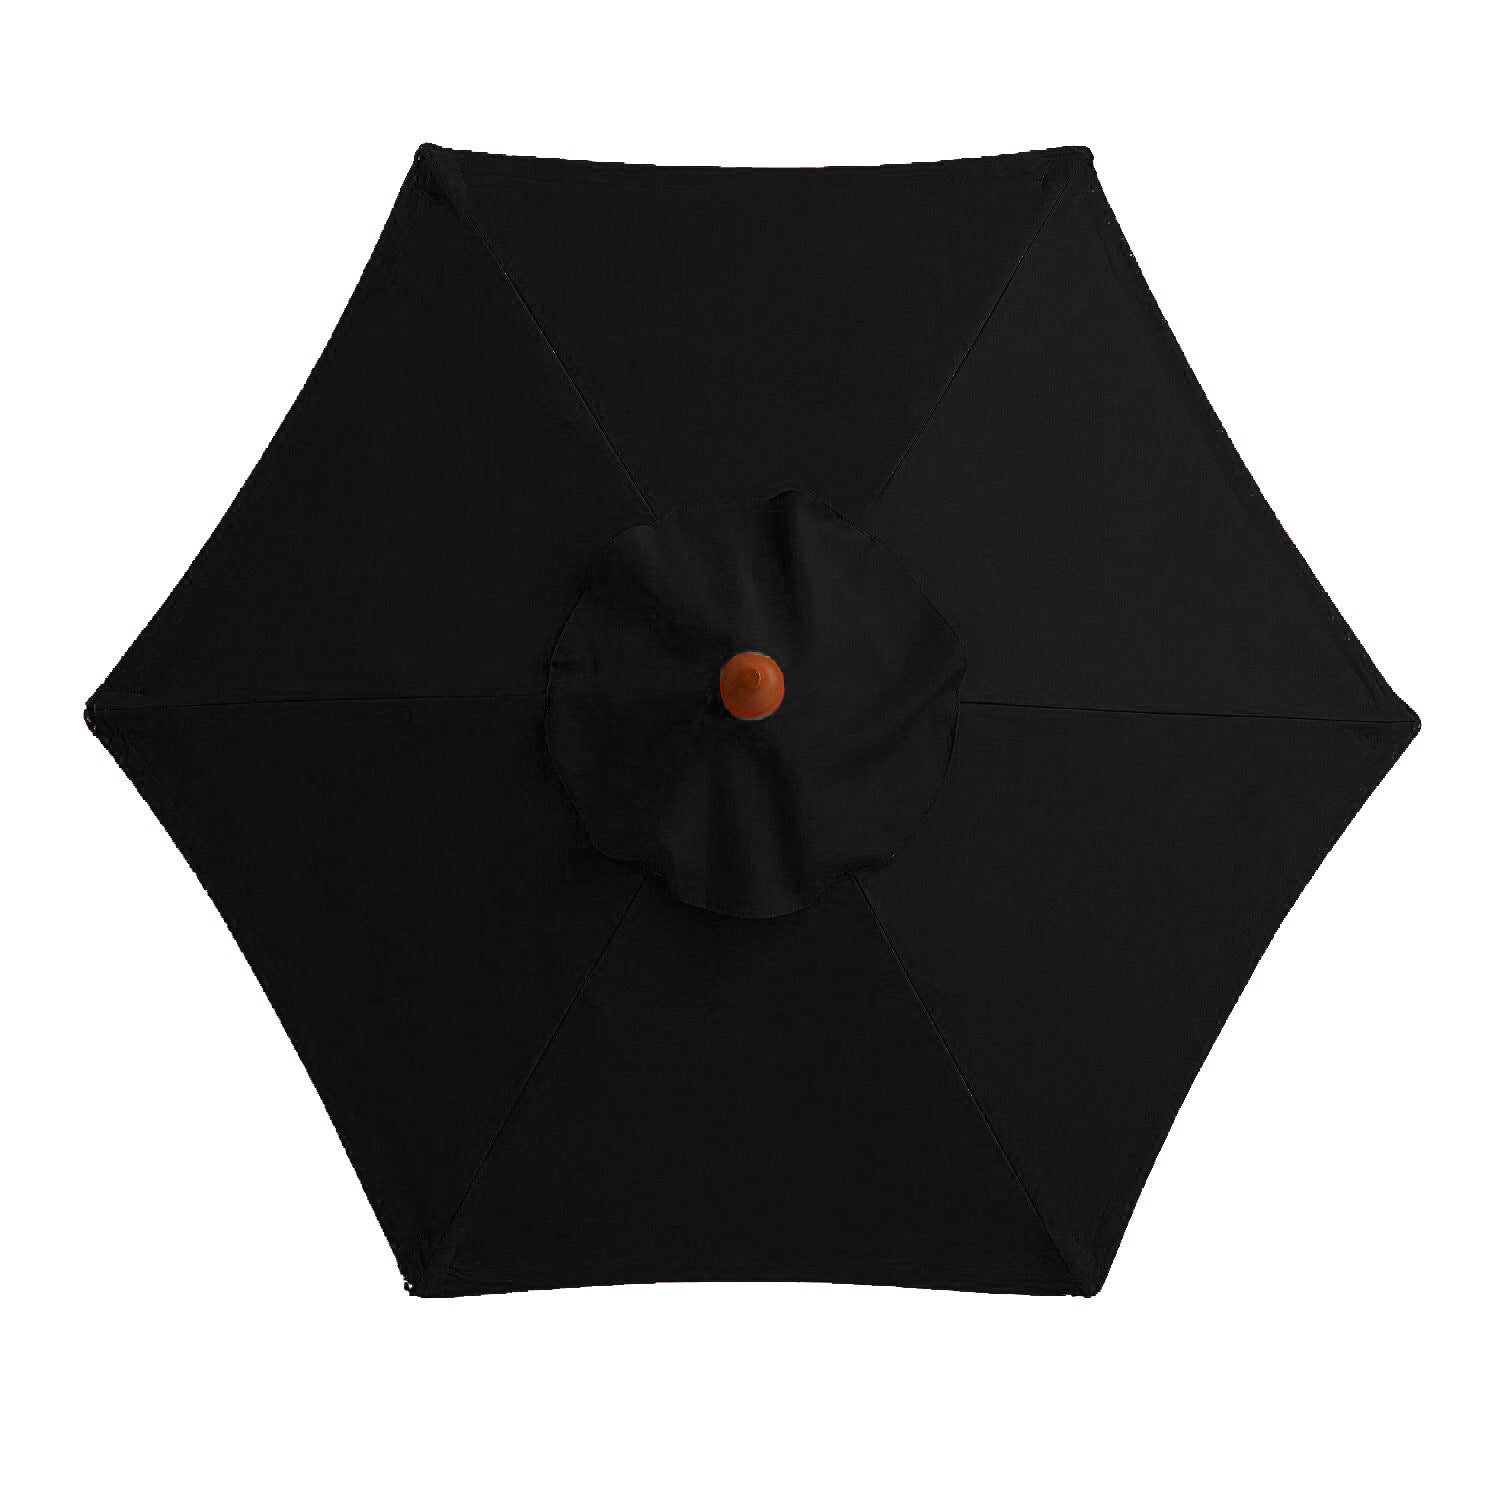 Outdoor-Regenschirm